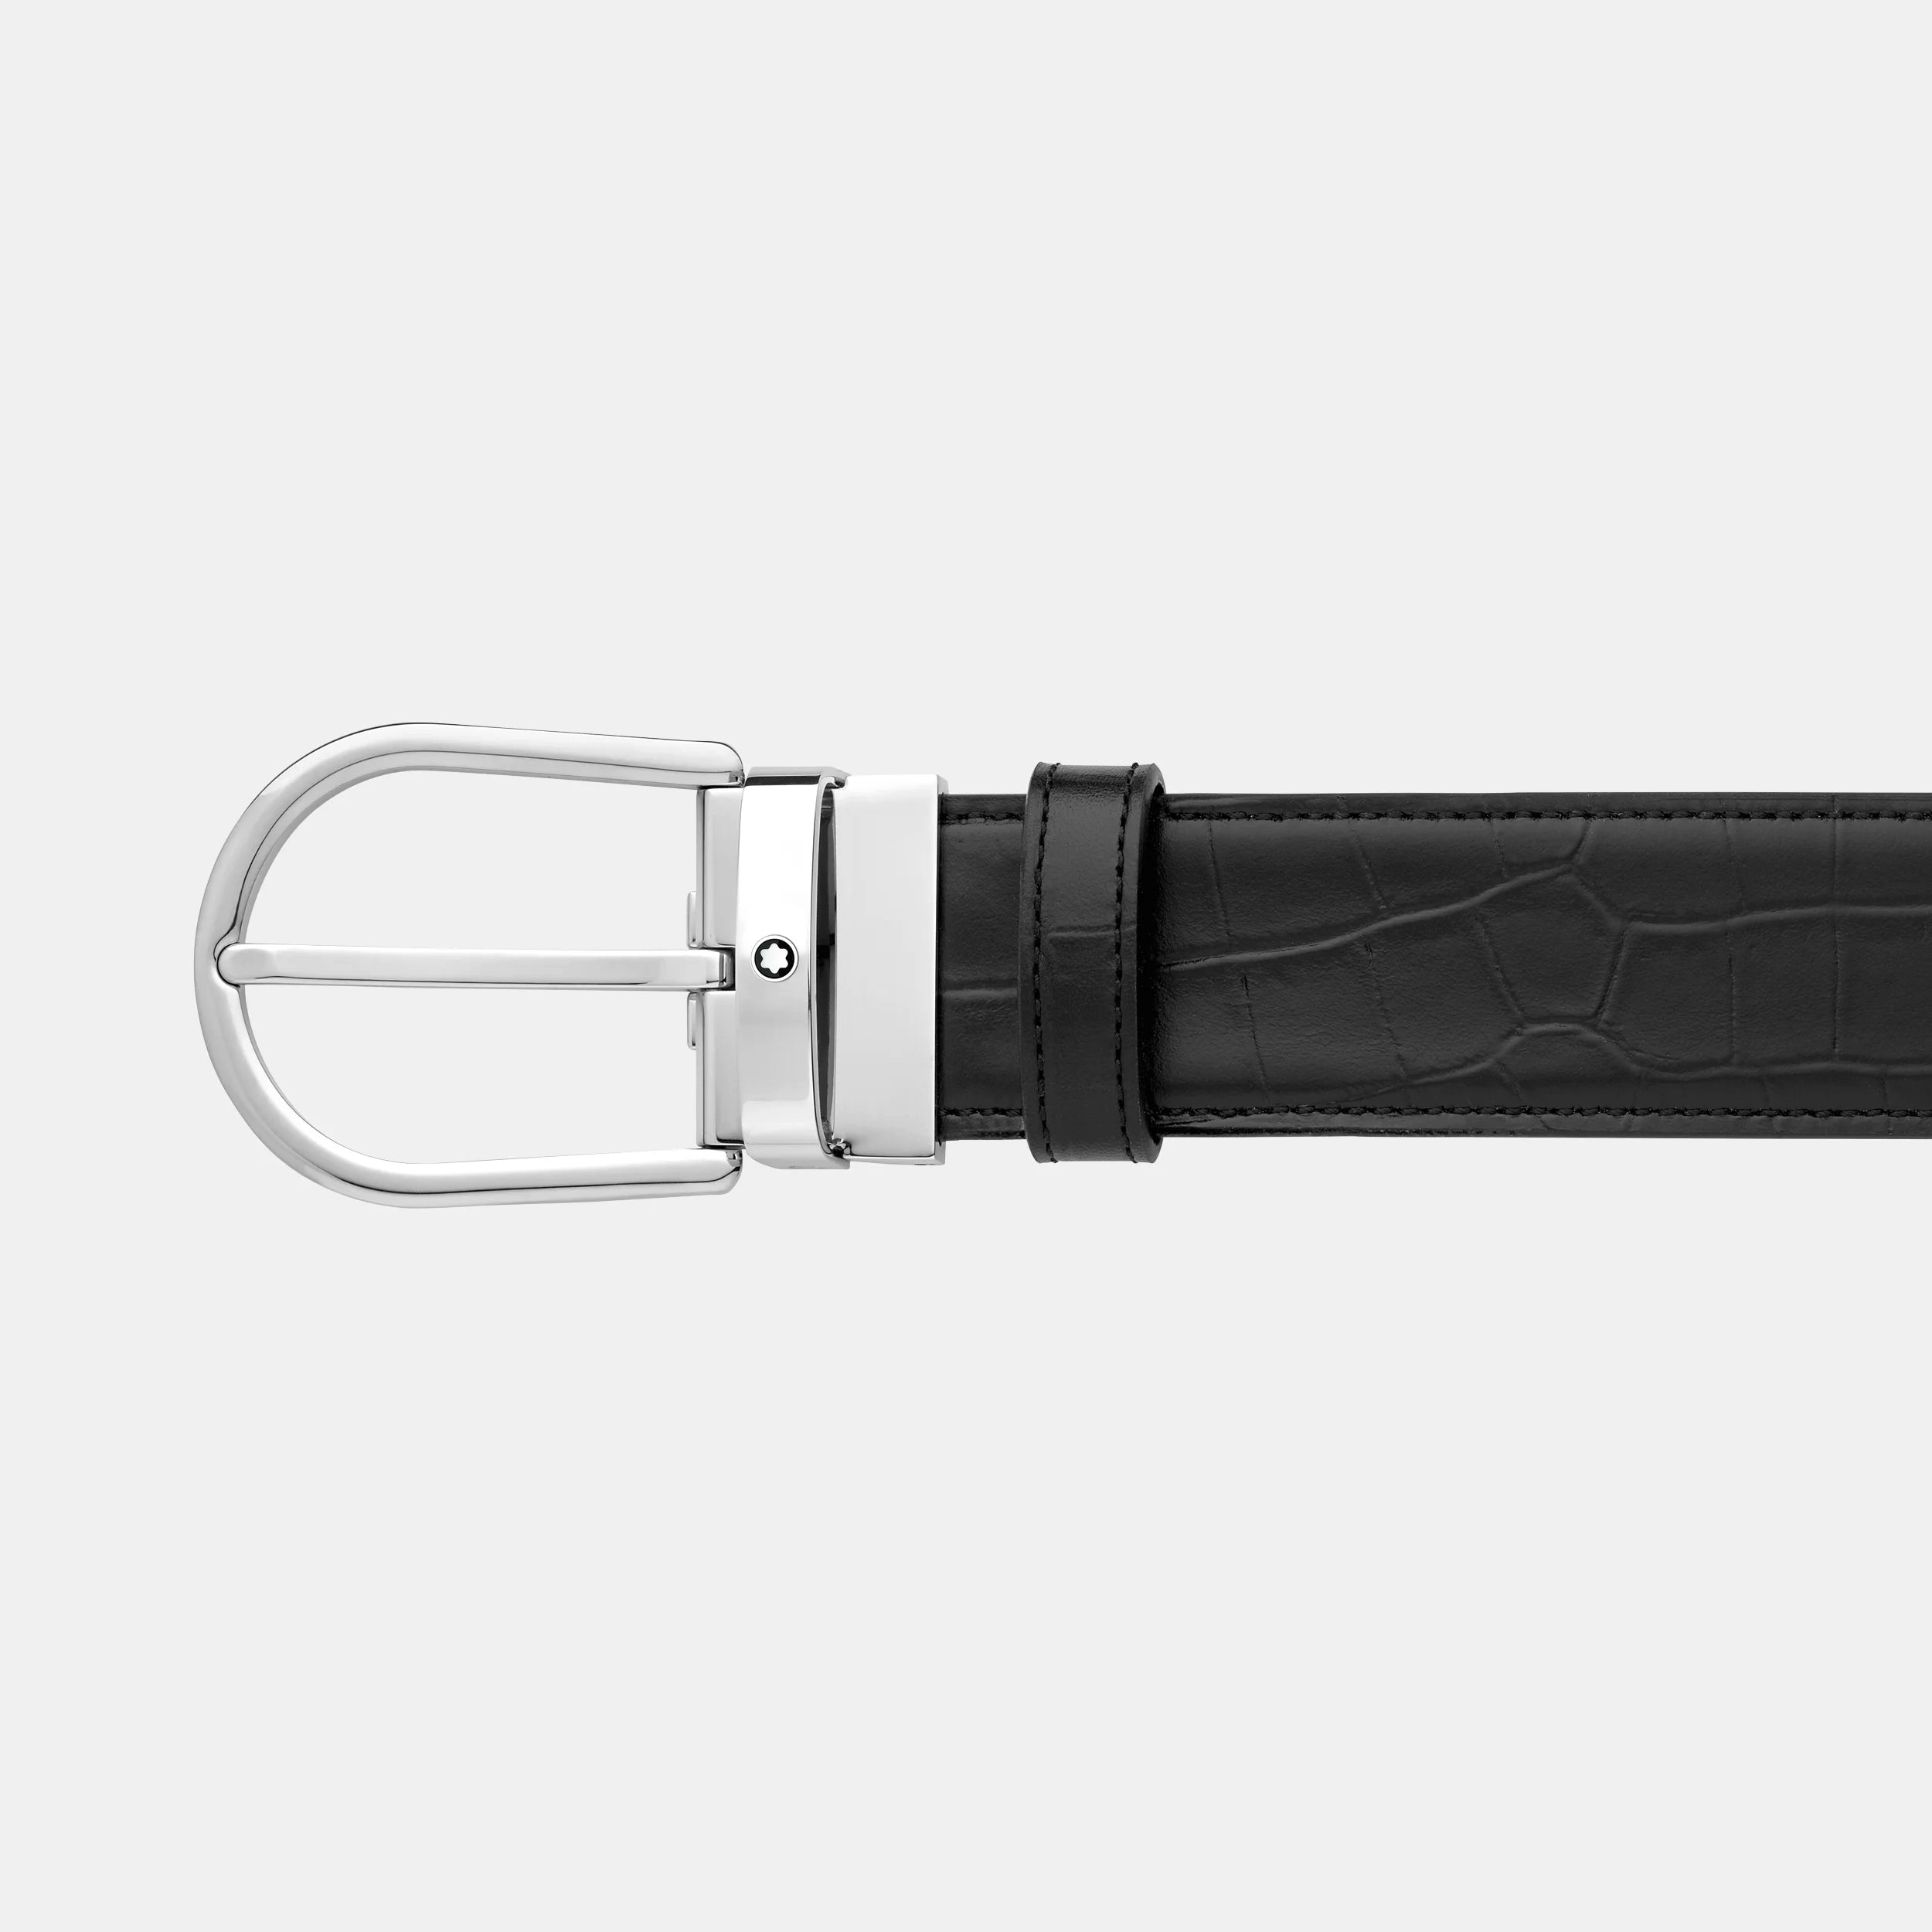 MONTBLANC | Cintura da 35 mm con fibbia a ferro di cavallo reversibile in pelle nera liscia e stampata | MB130016